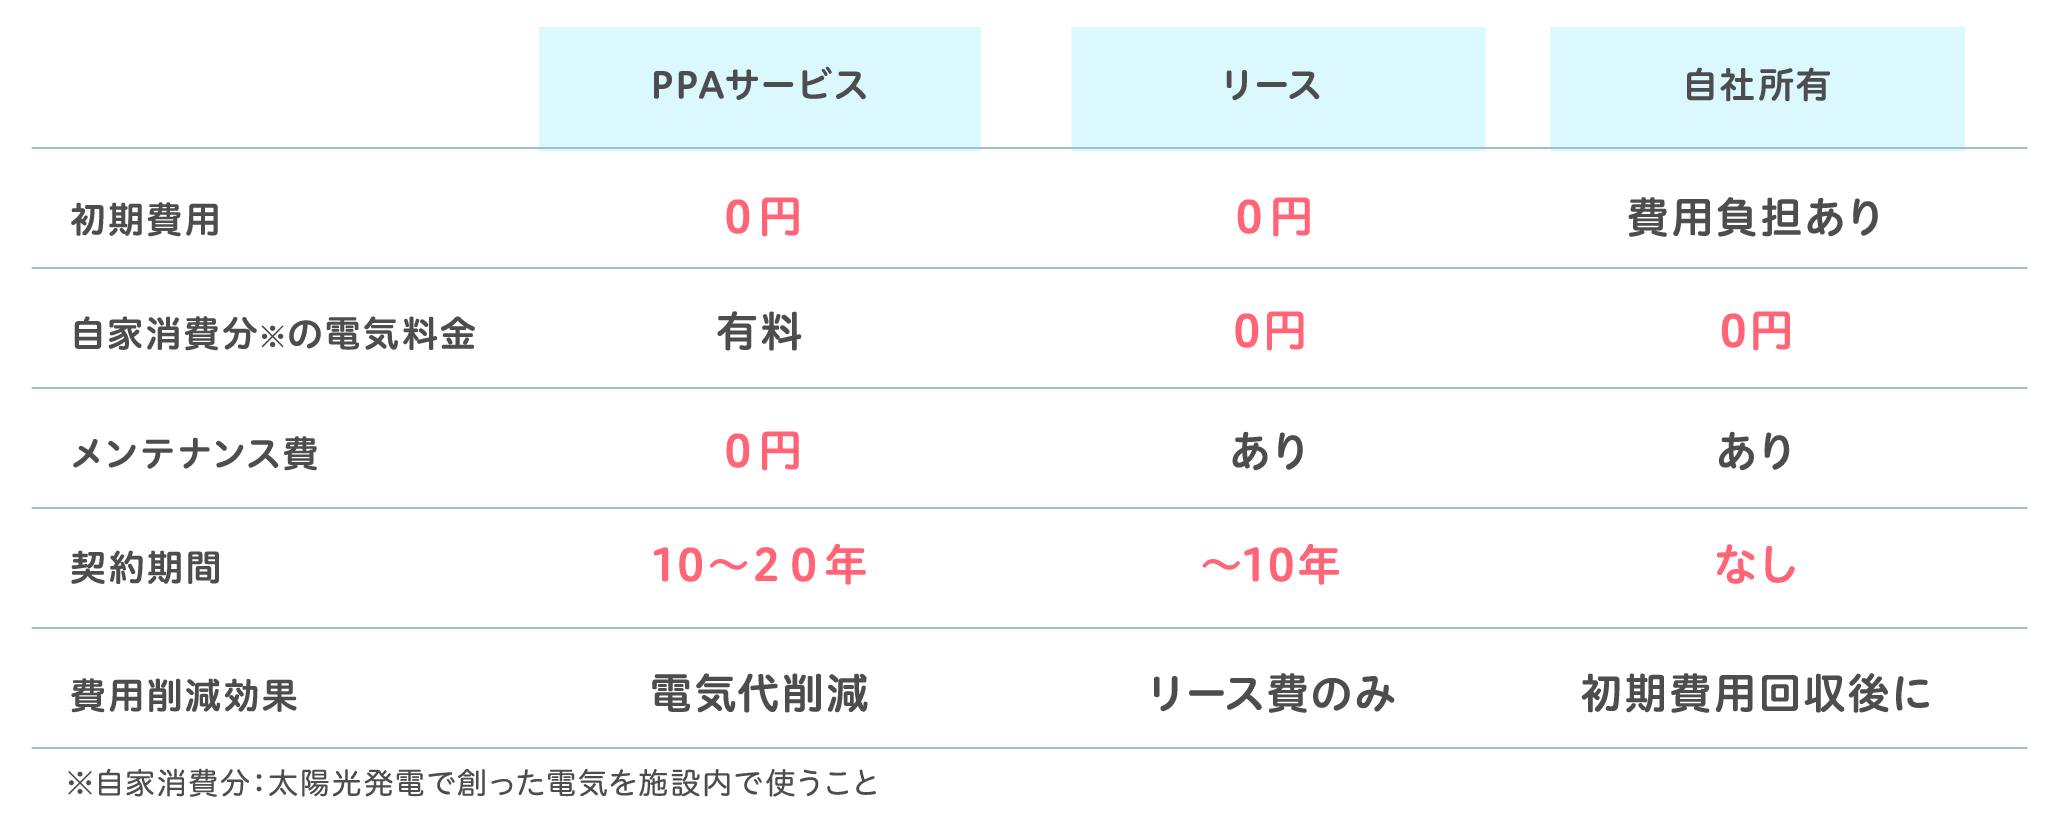 PPAサービスの比較表